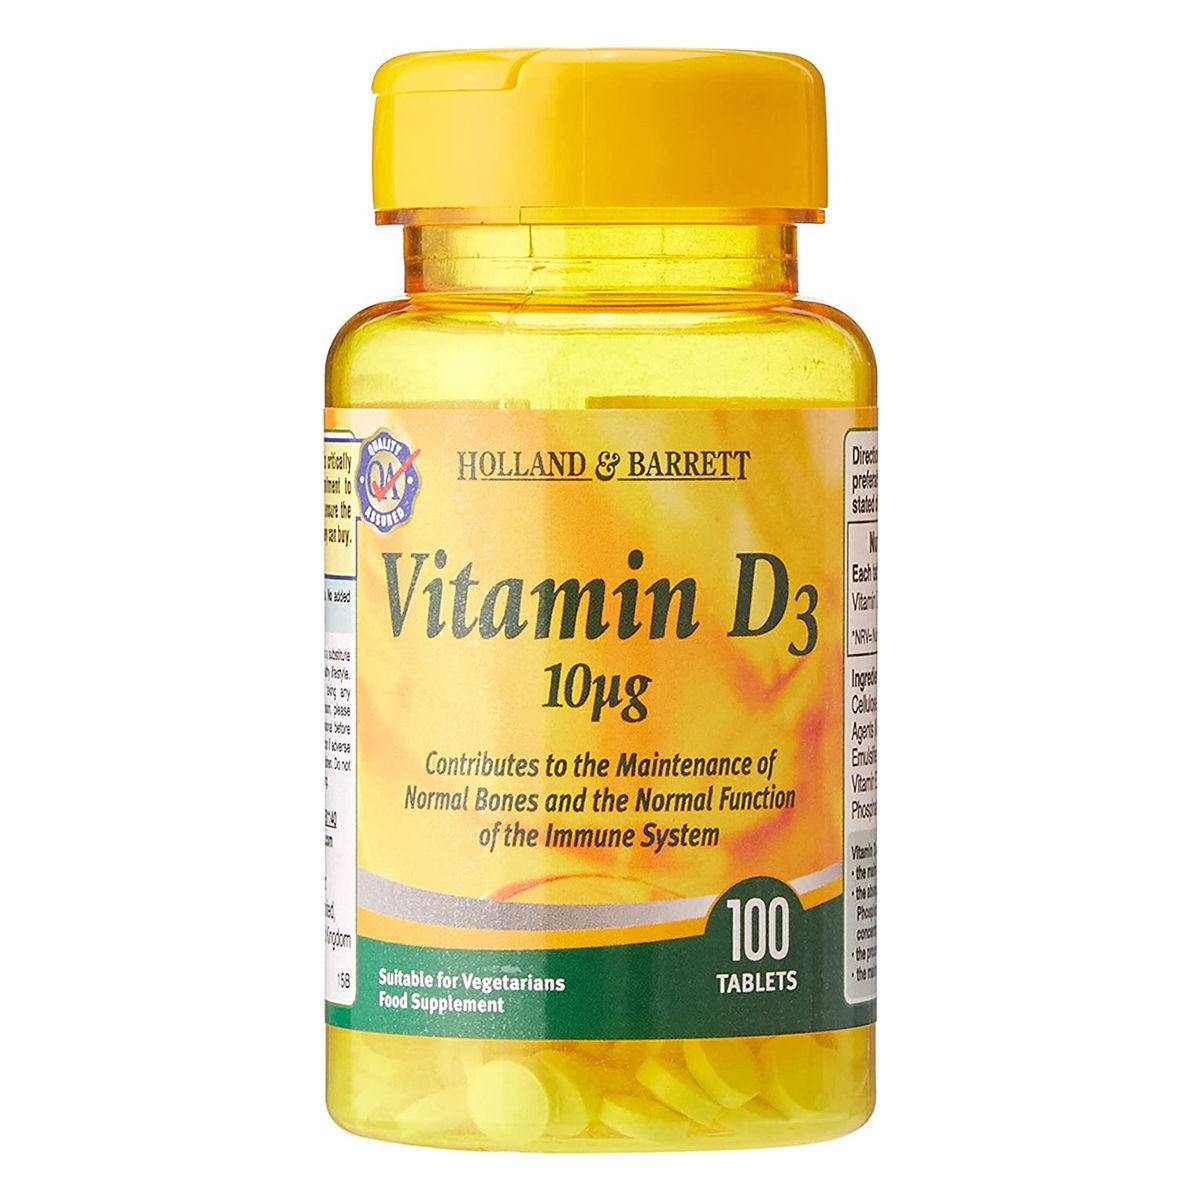 Buy Holland & Barrett Vitamin D3 10 ug, 100 Tablets Online